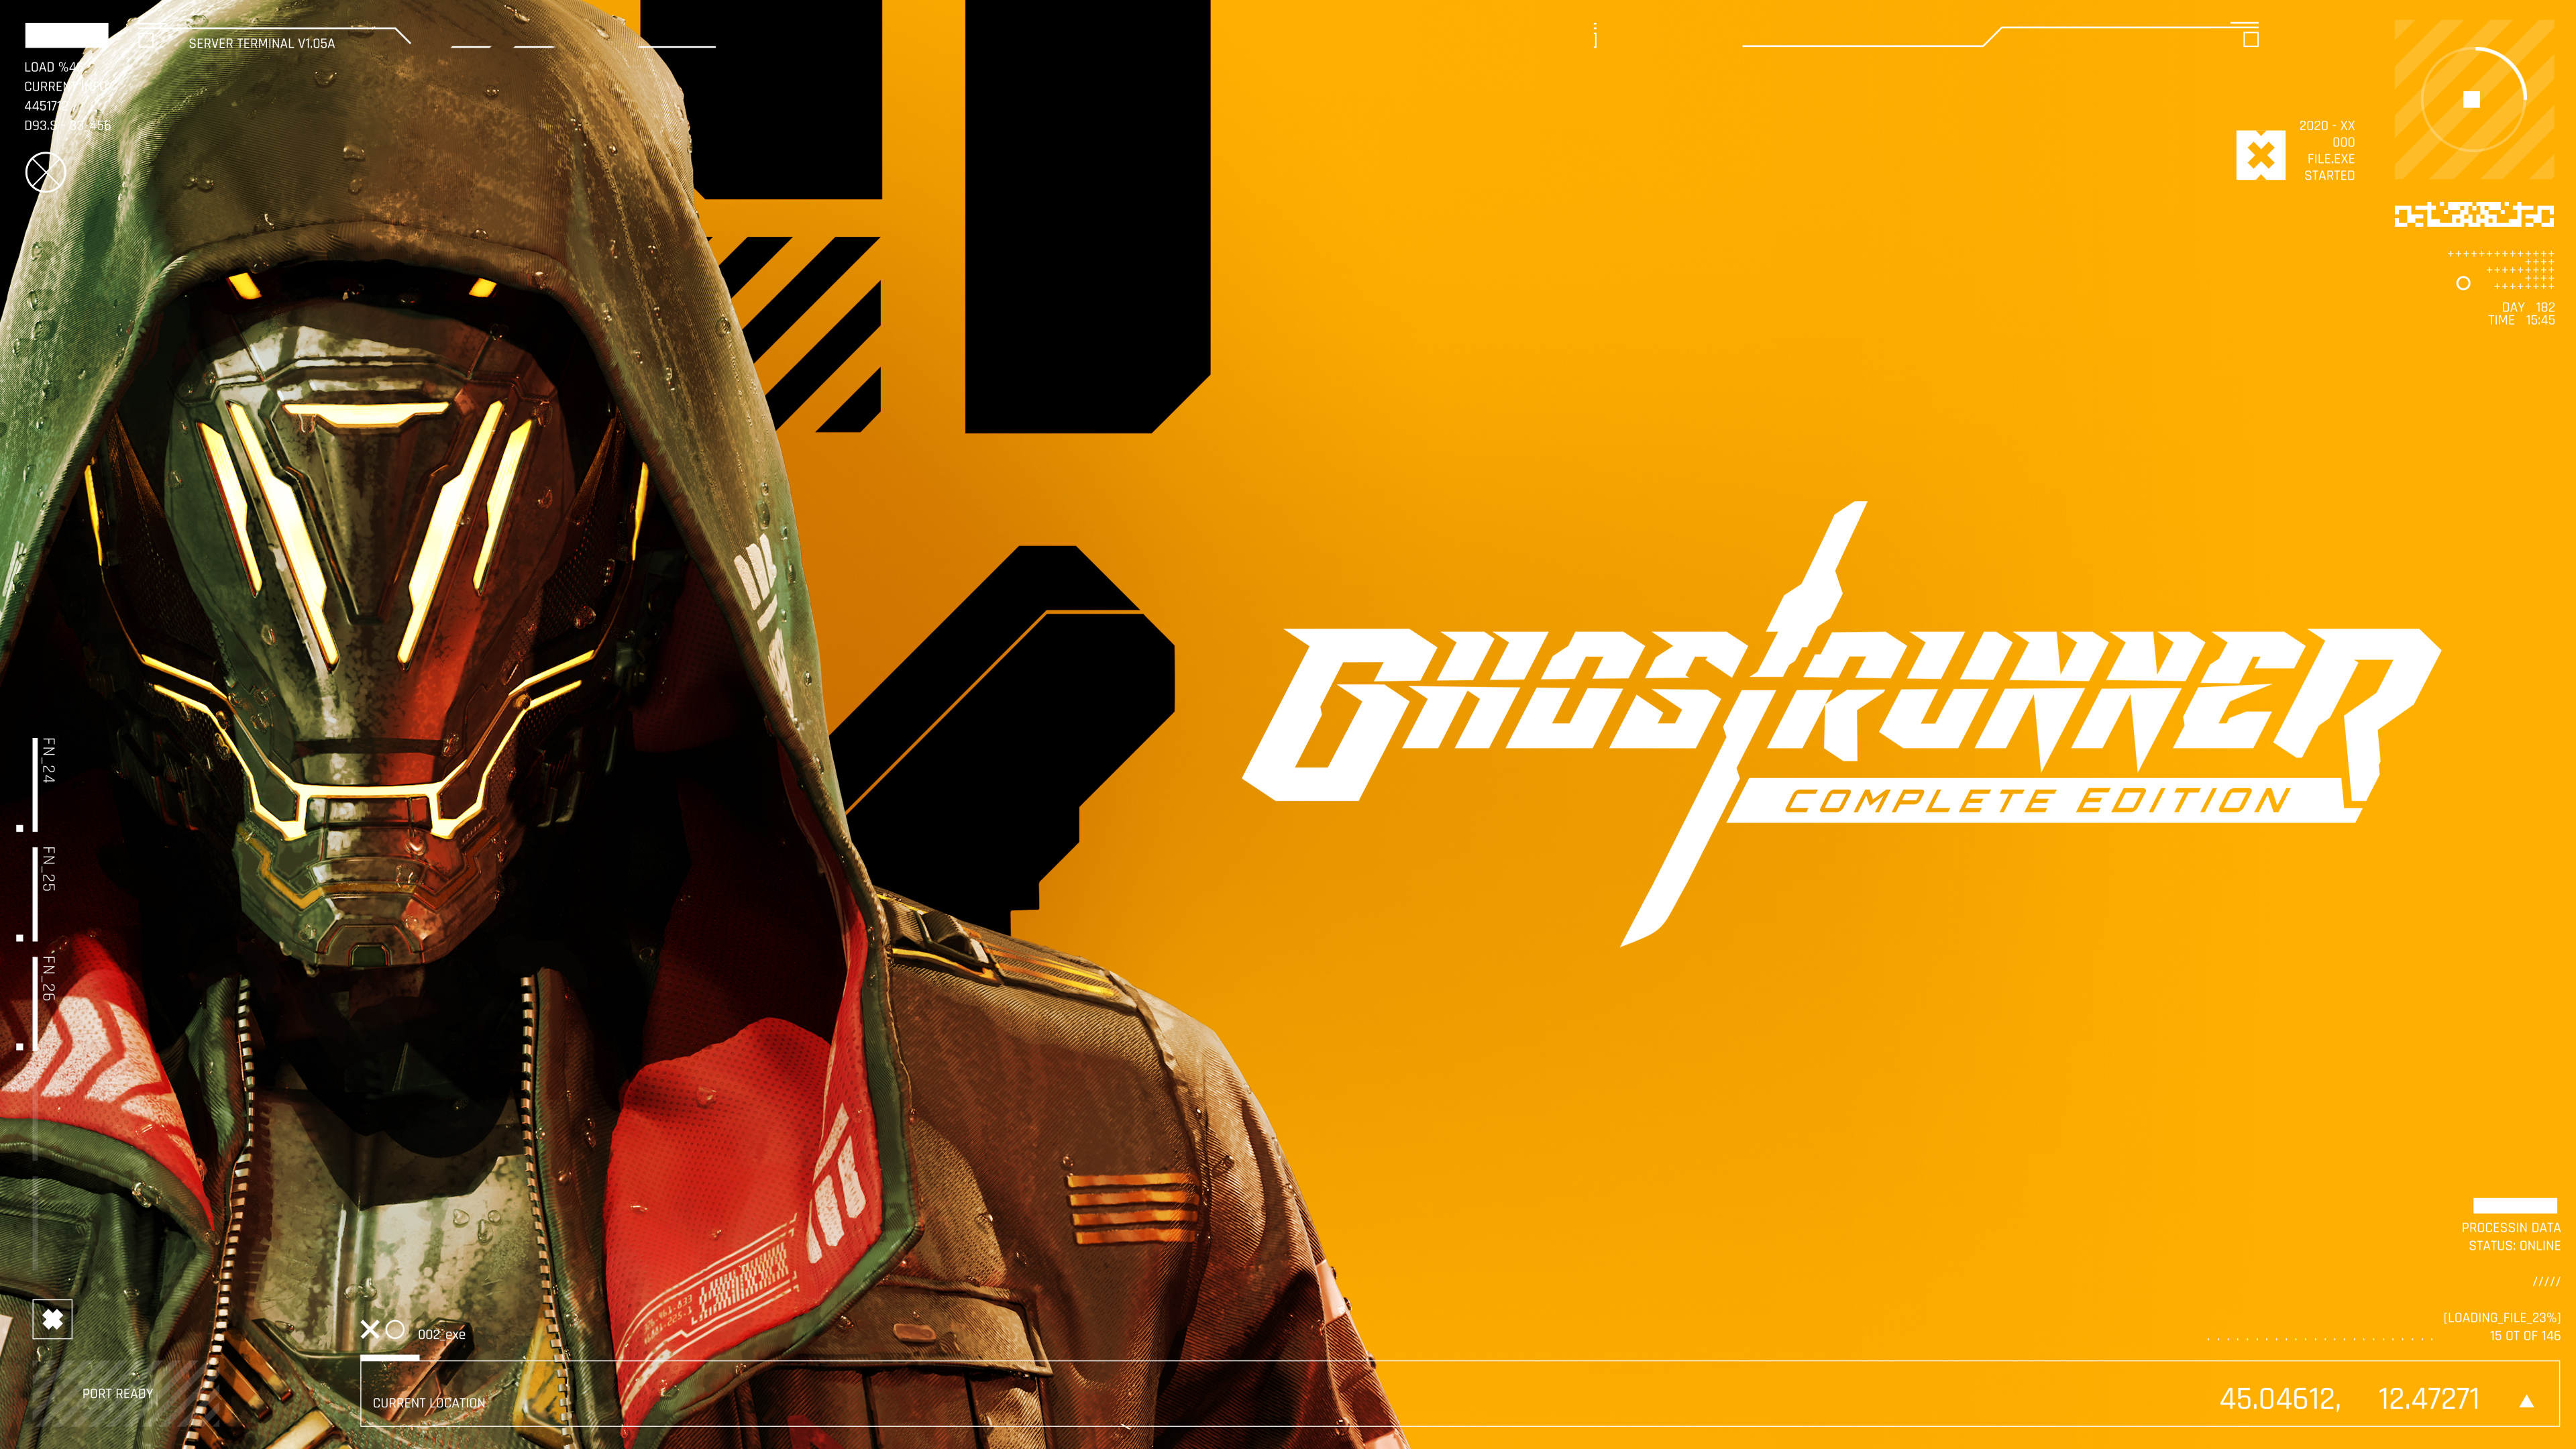 Ya esta disponible Ghostrunner: Complete Edition para las principales consolas y PC